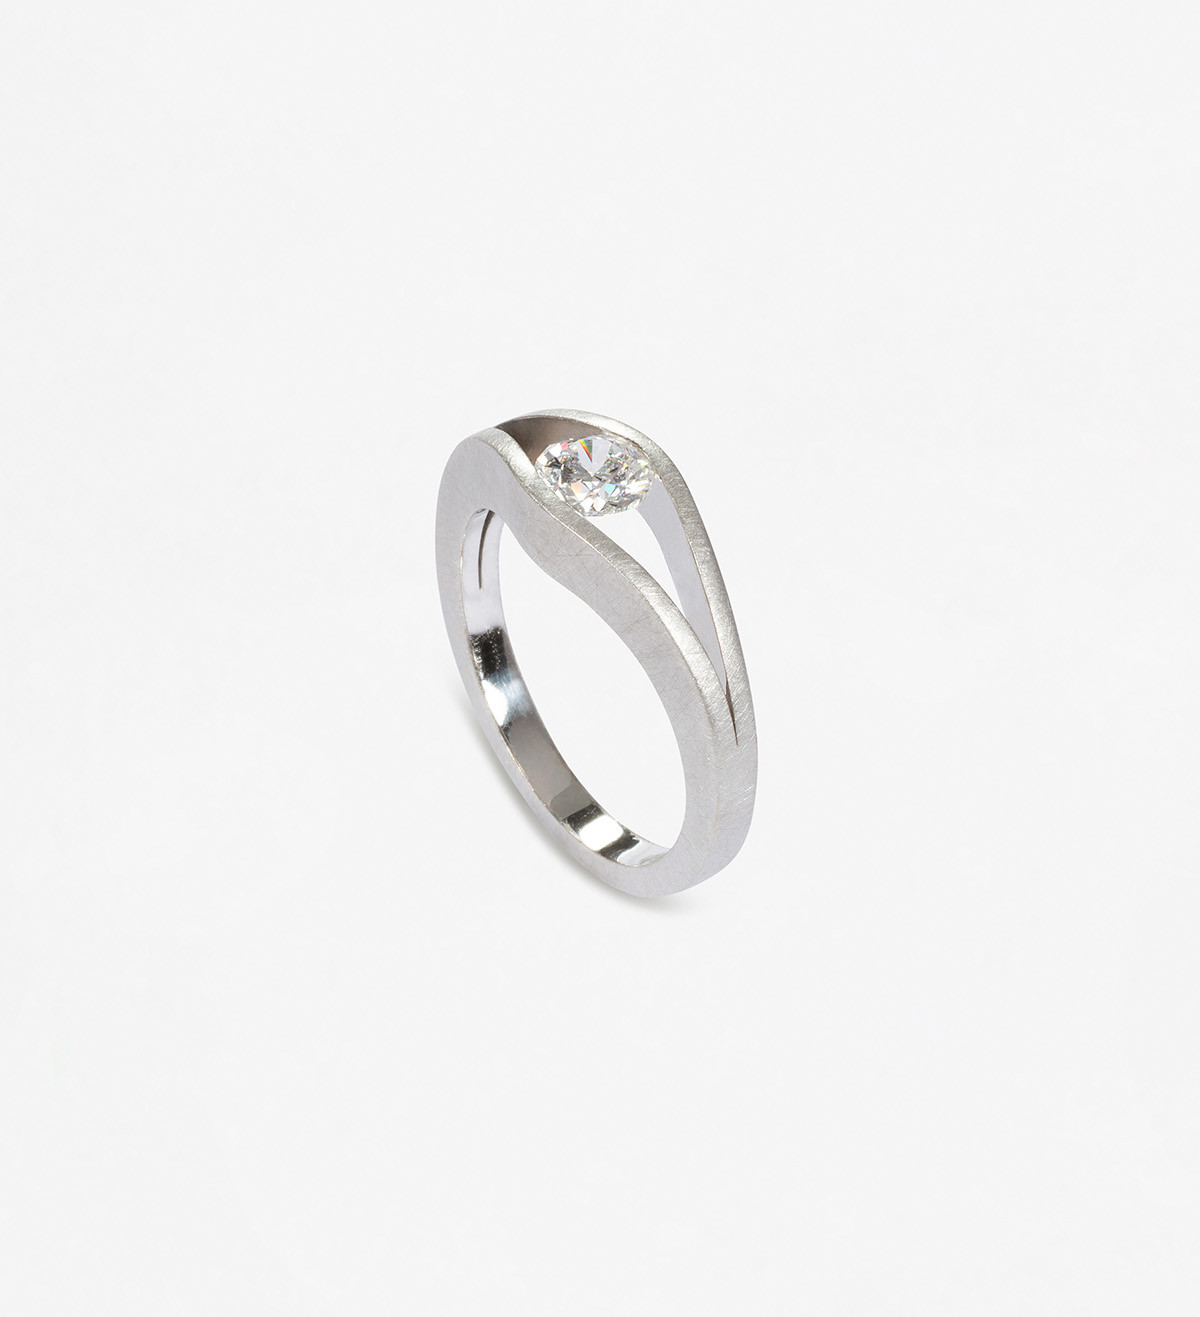 18k white gold ring with diamond 0.31k VVS2 D